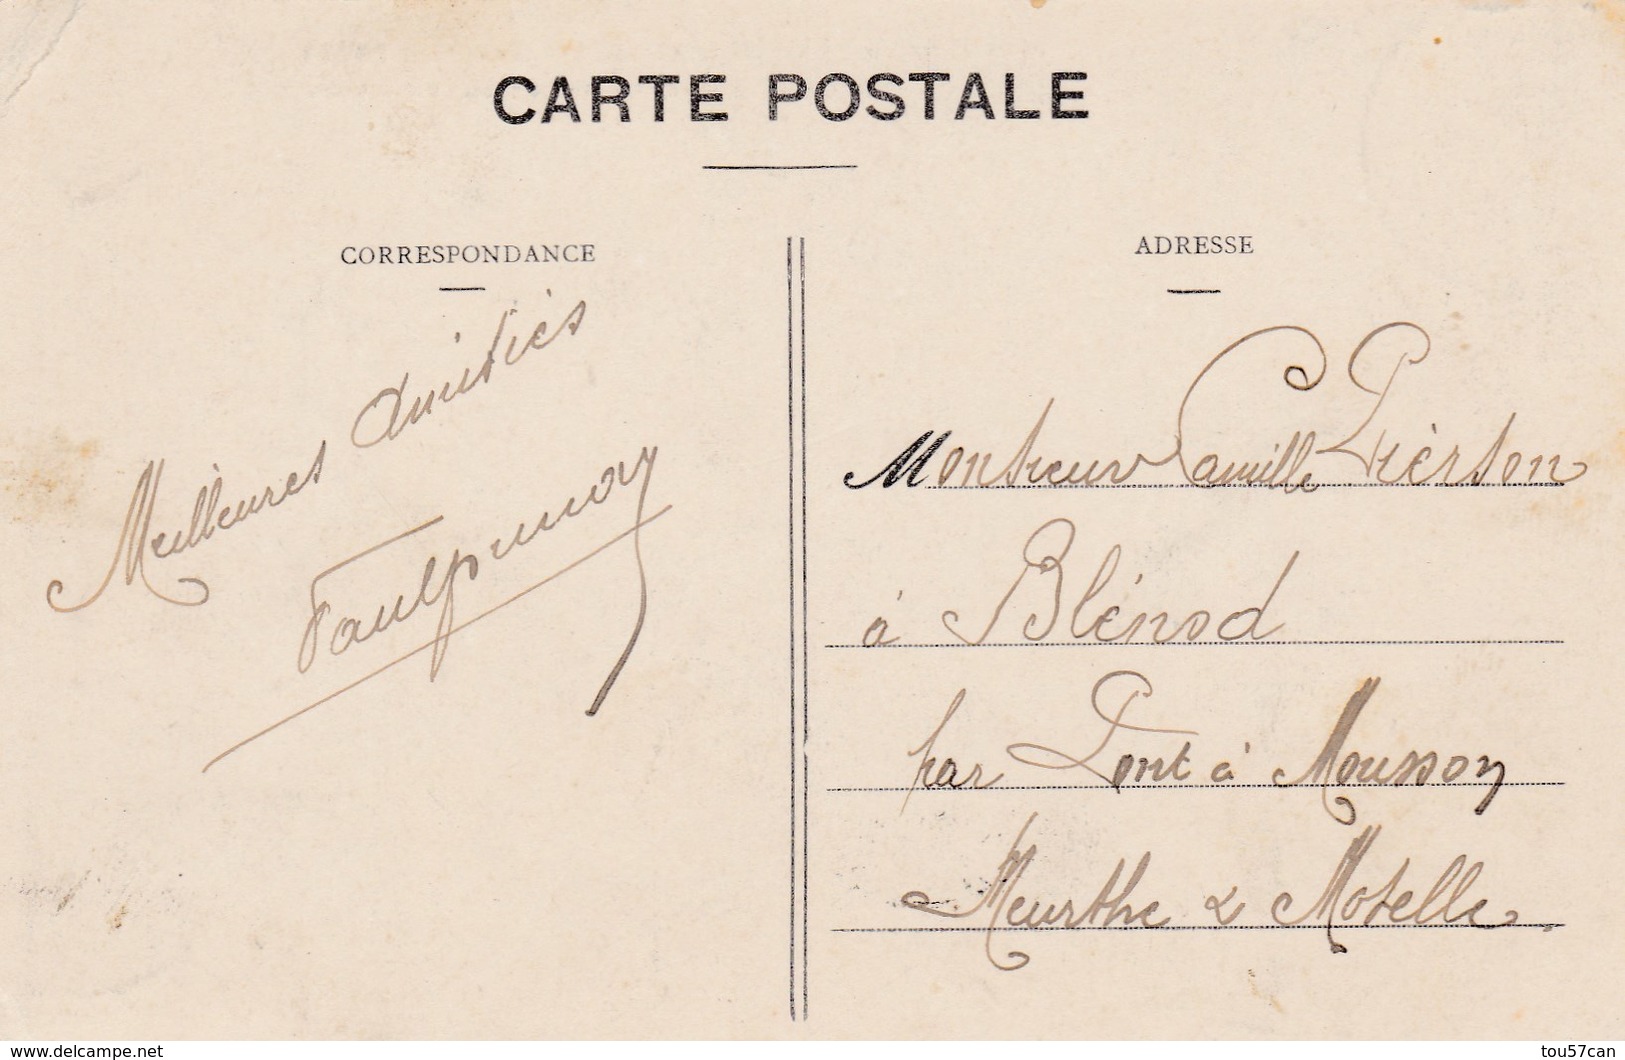 PARIS INONDATIONS DE 1910  -  (75)  - CPA ANIMÉE - AU MARCHE AUX POMMES. - Überschwemmung 1910